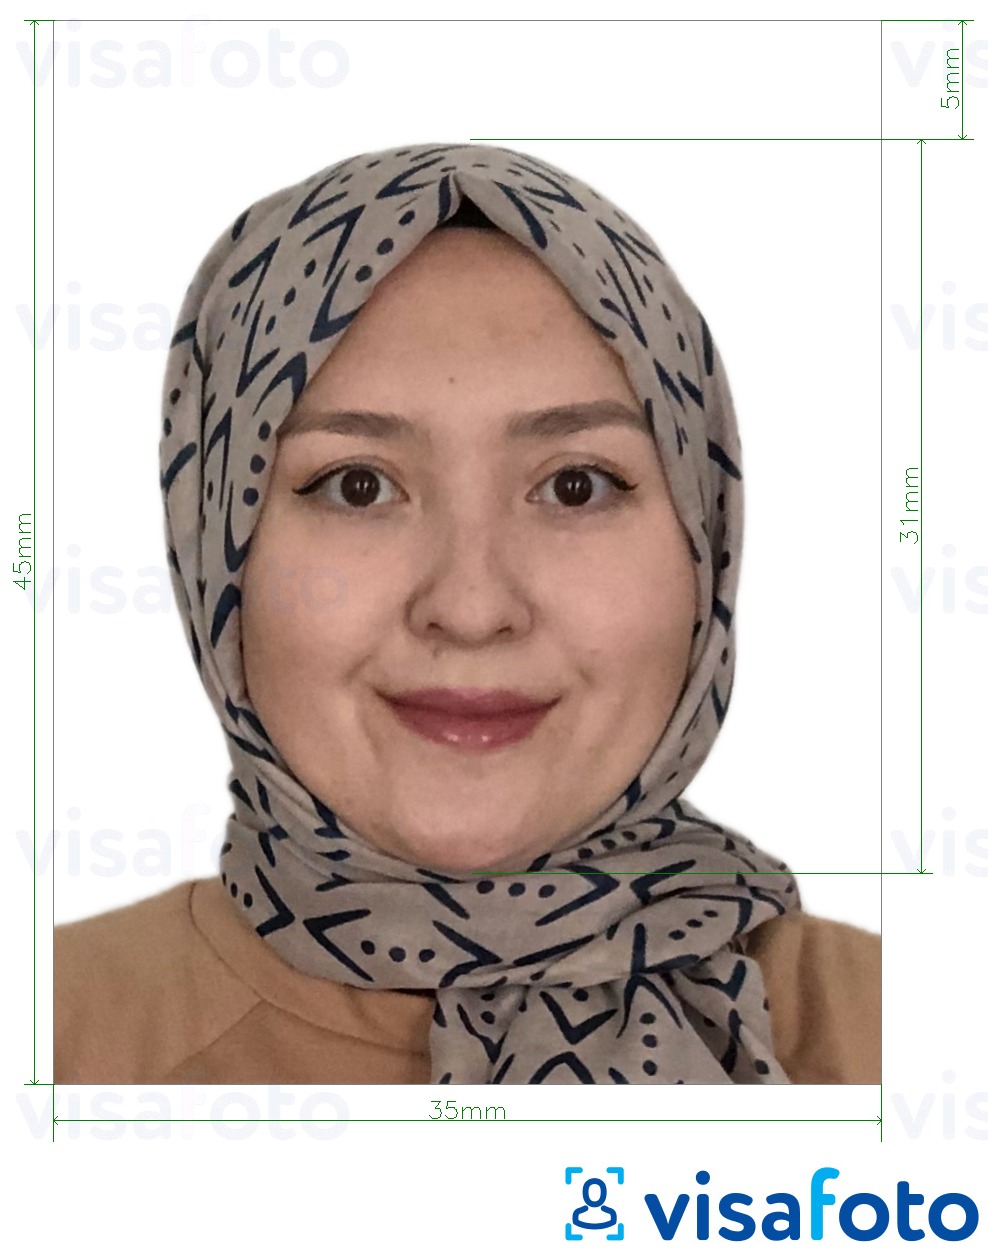 Fotobeispiel für Malaysia Visa 35x45 mm weißer Hintergrund mit genauer größenangabe